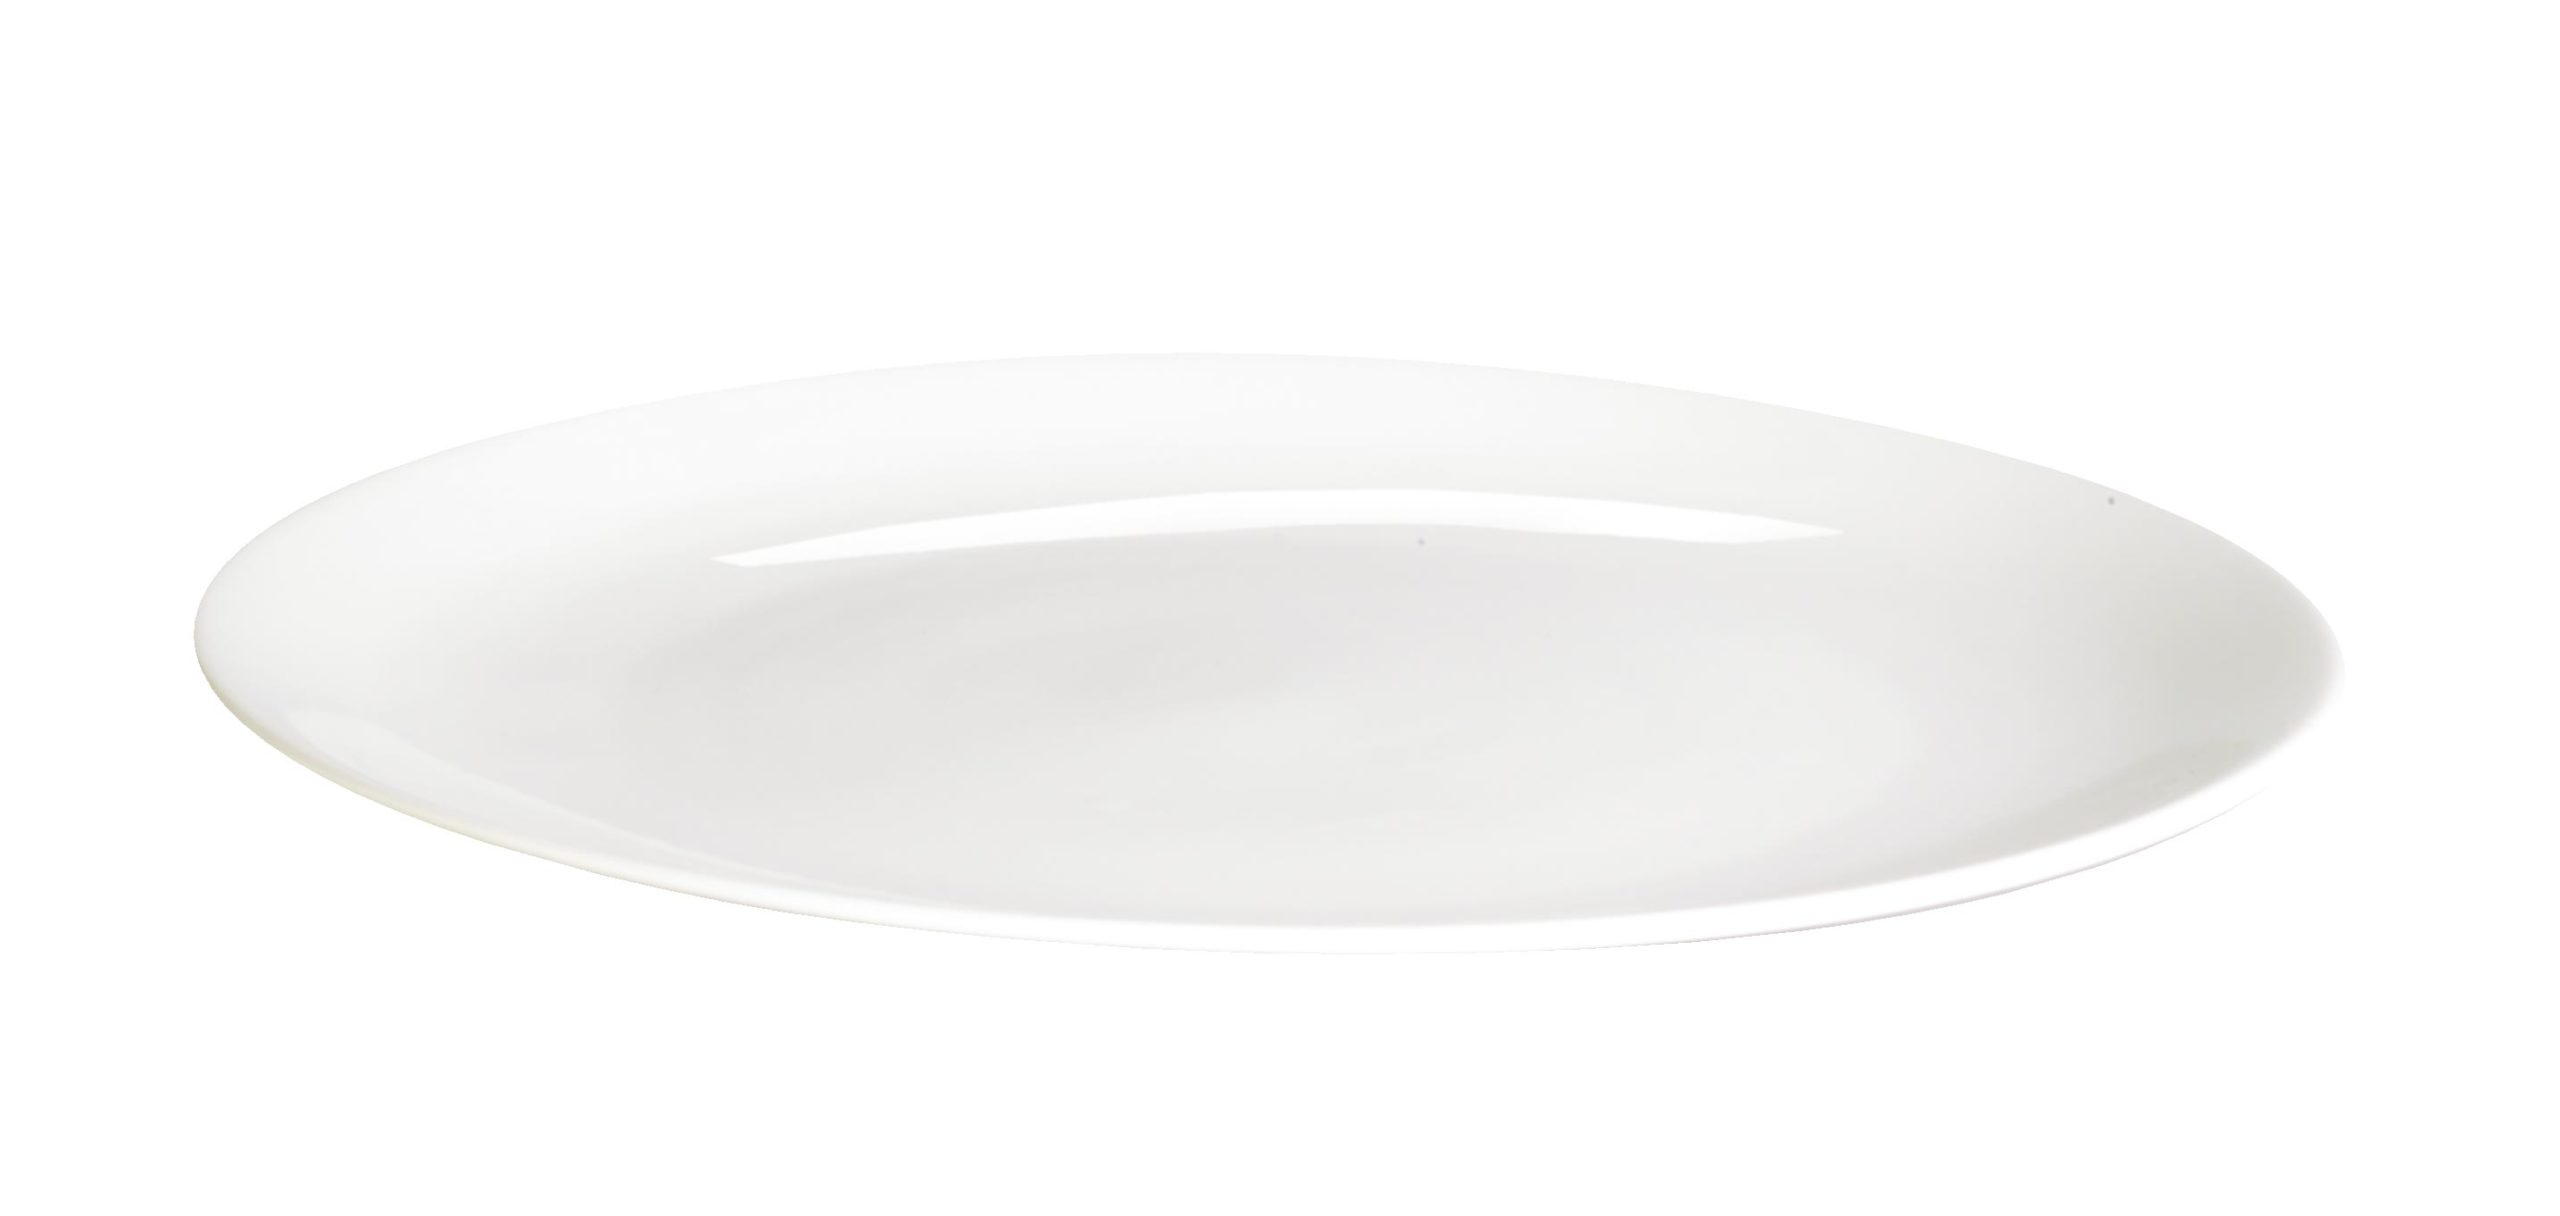 Asa Piatto 30 Cm A Table Bianco